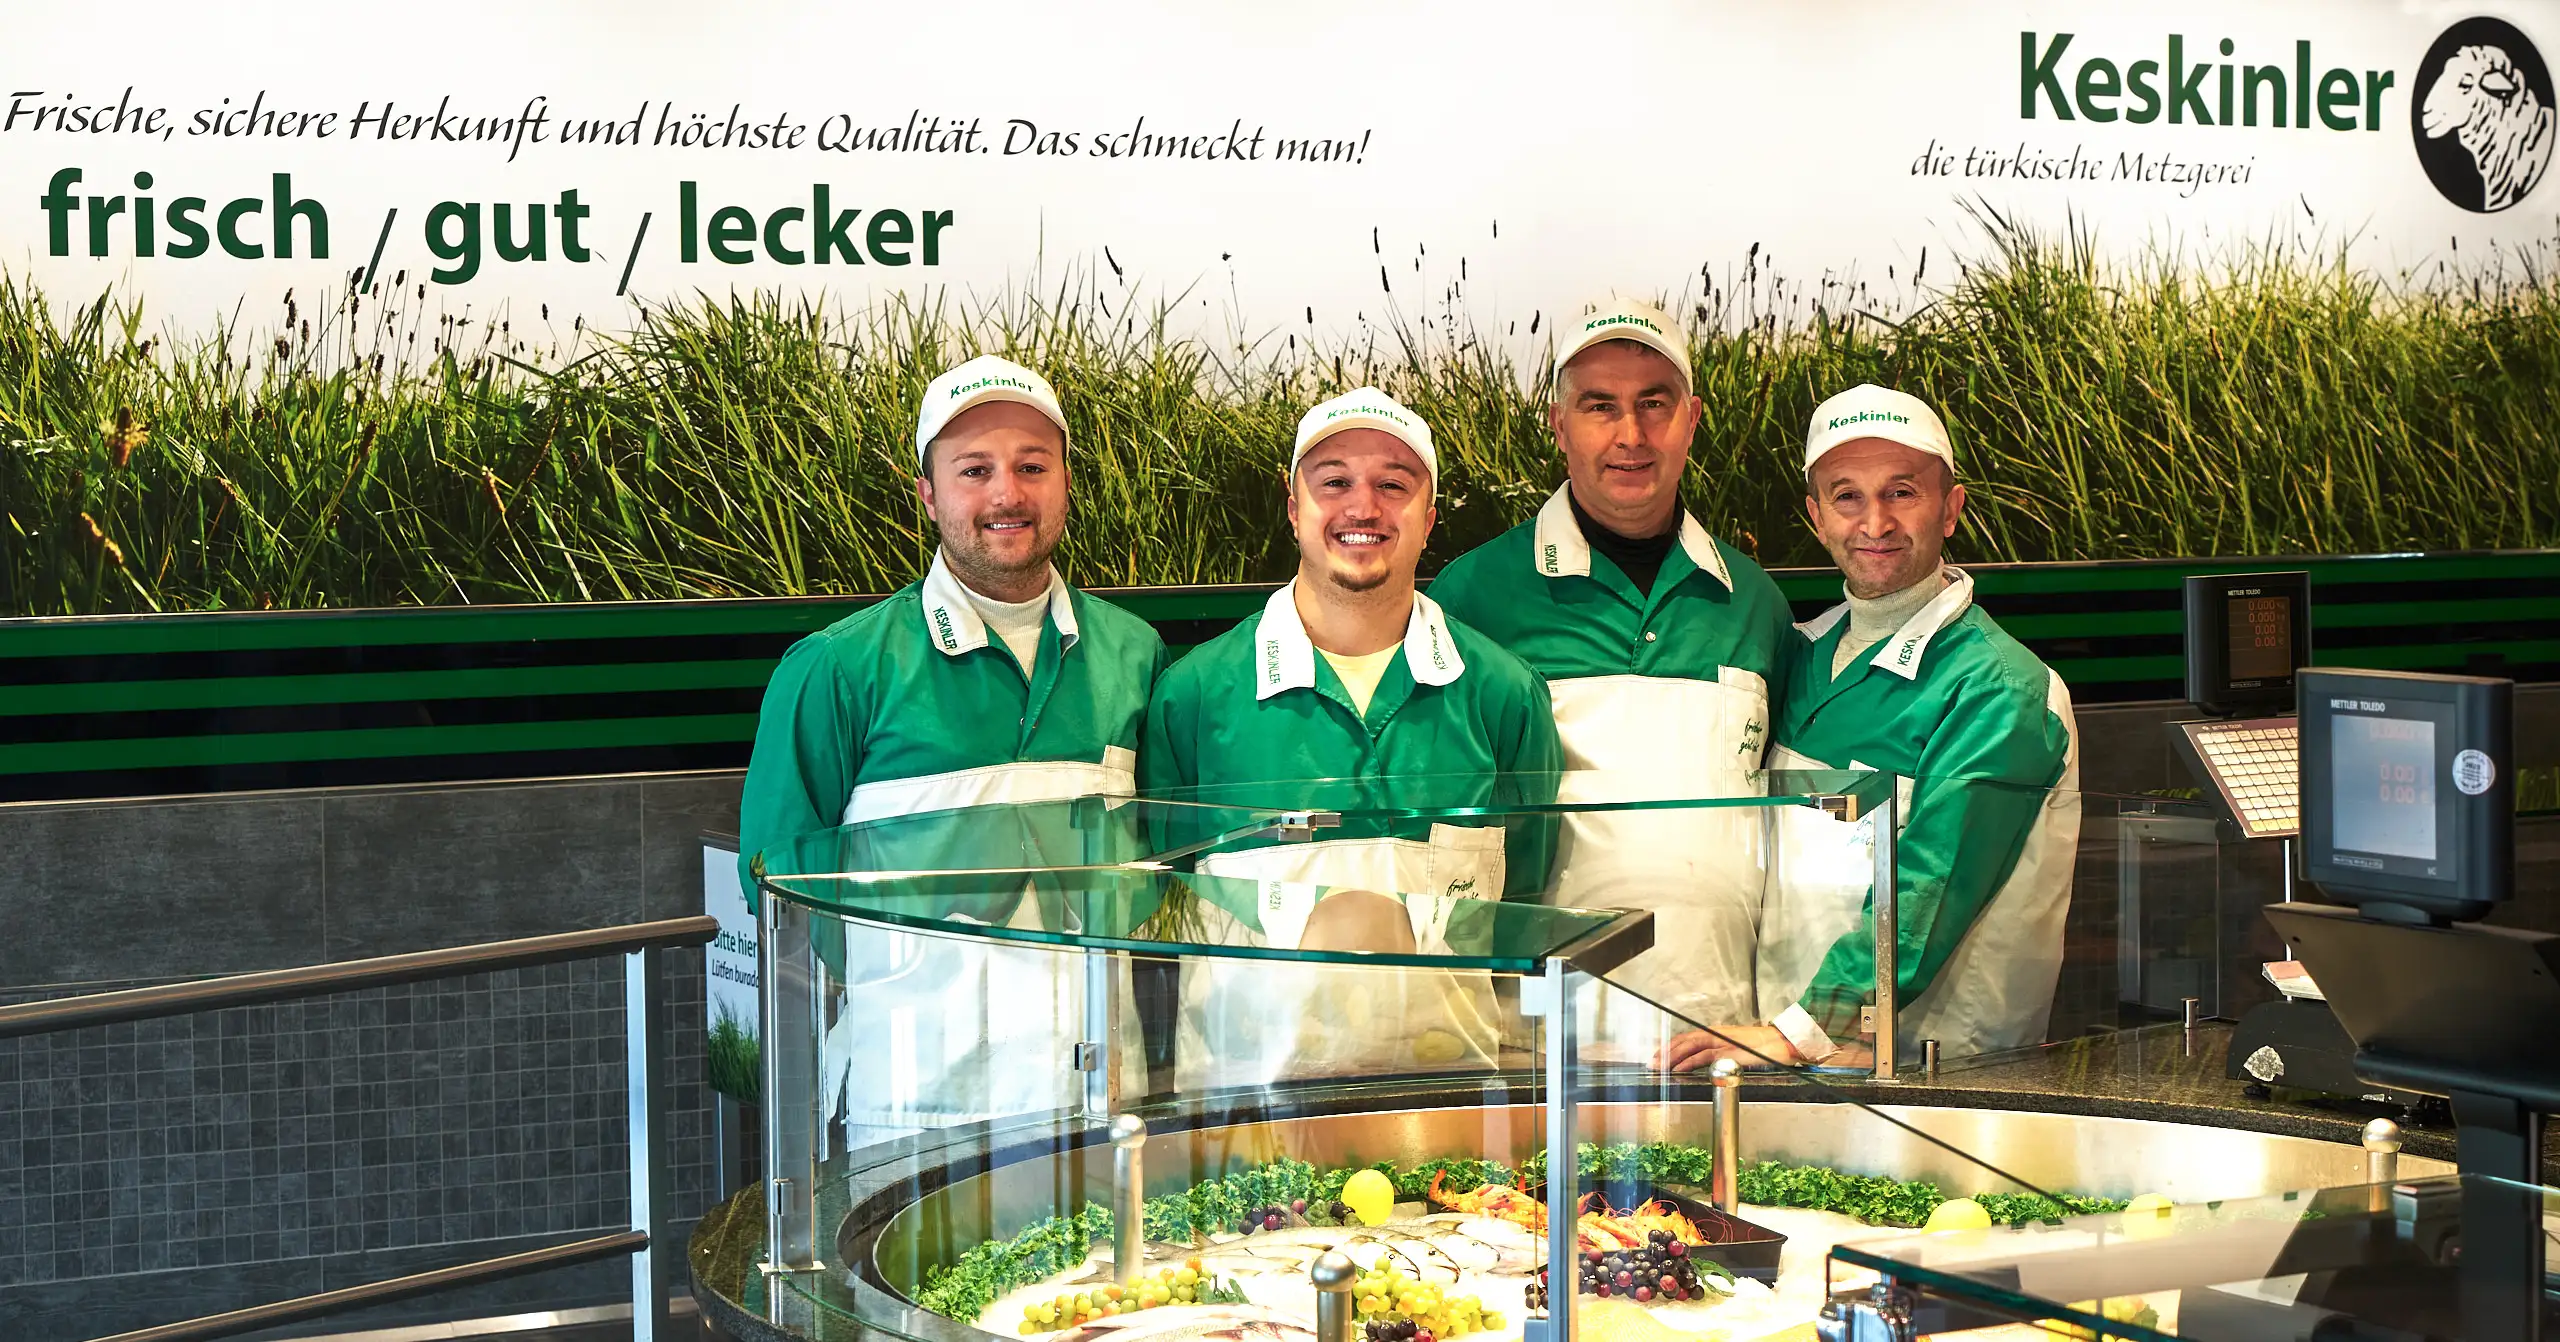 Das Keskinler-Team in ihrer Metzgerei in Dortmund Eving. Foto: Peter Hölscher